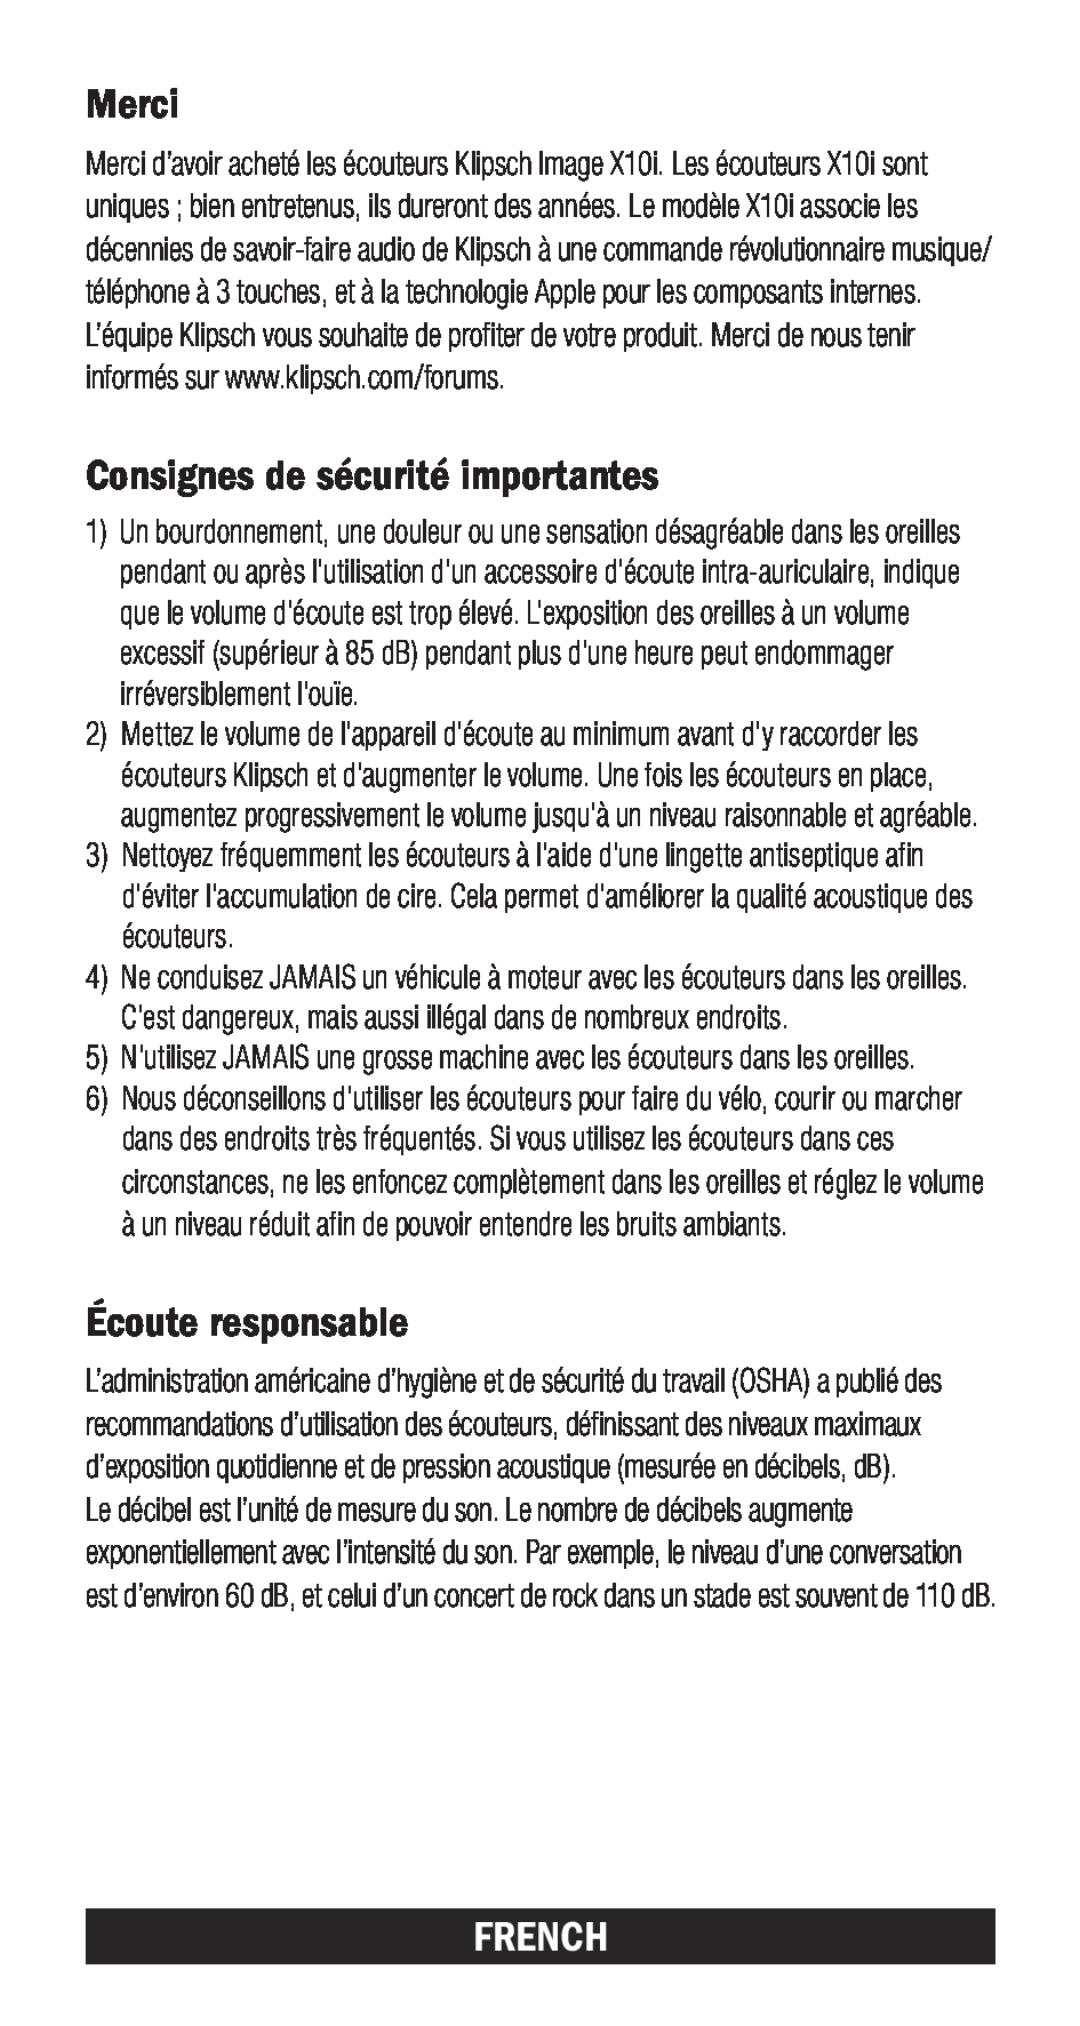 Klipsch X10I owner manual Merci, Consignes de sécurité importantes, Écoute responsable, French 